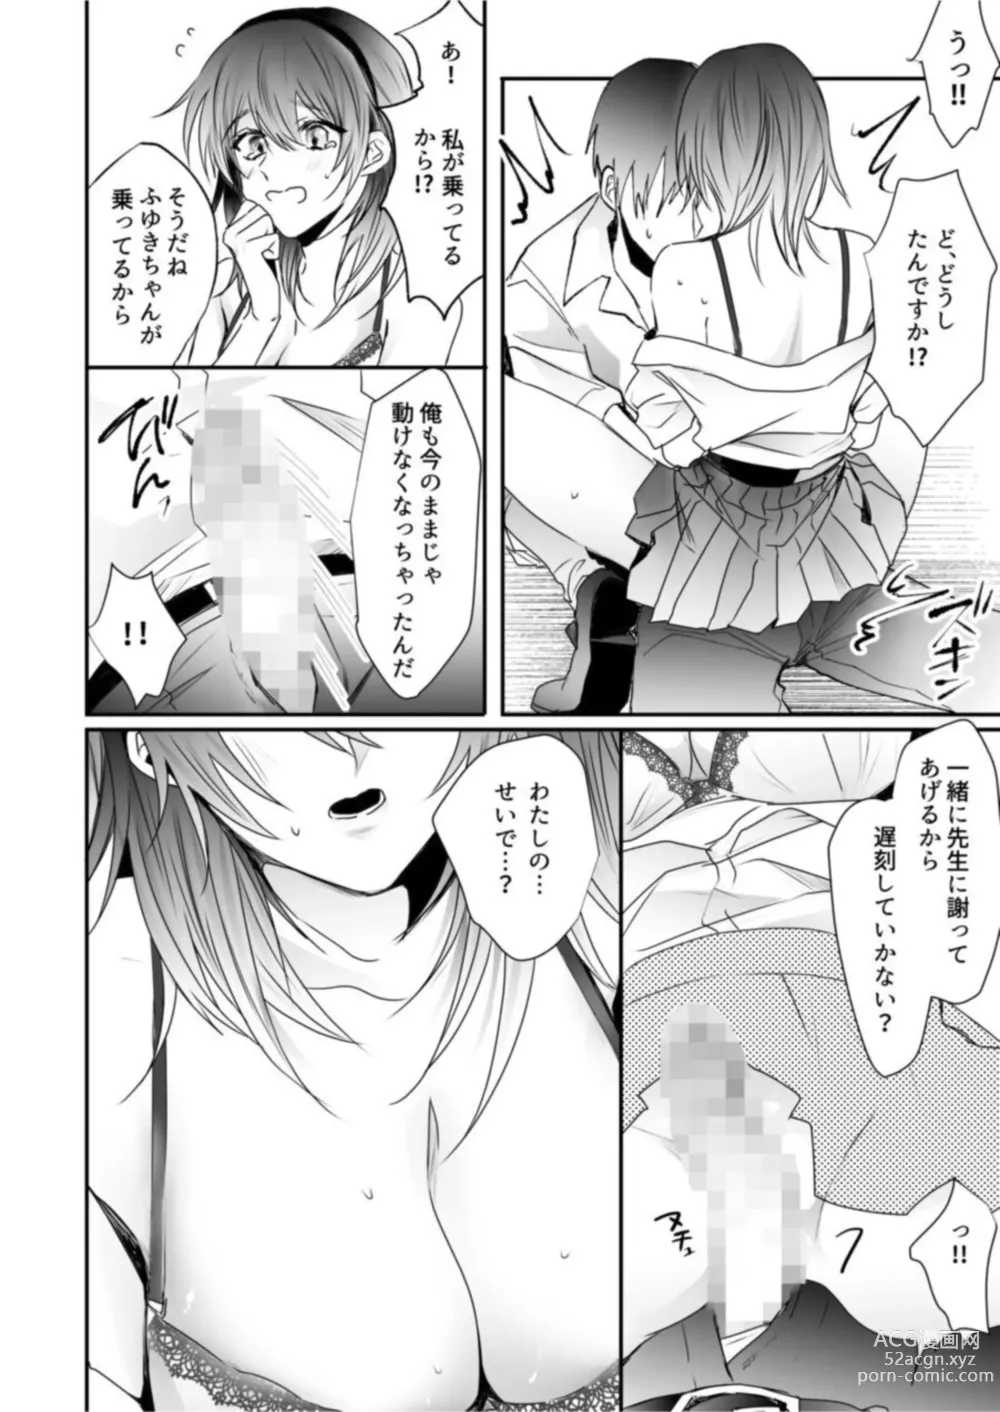 Page 14 of manga Chichiatsu Nadeshiko 1